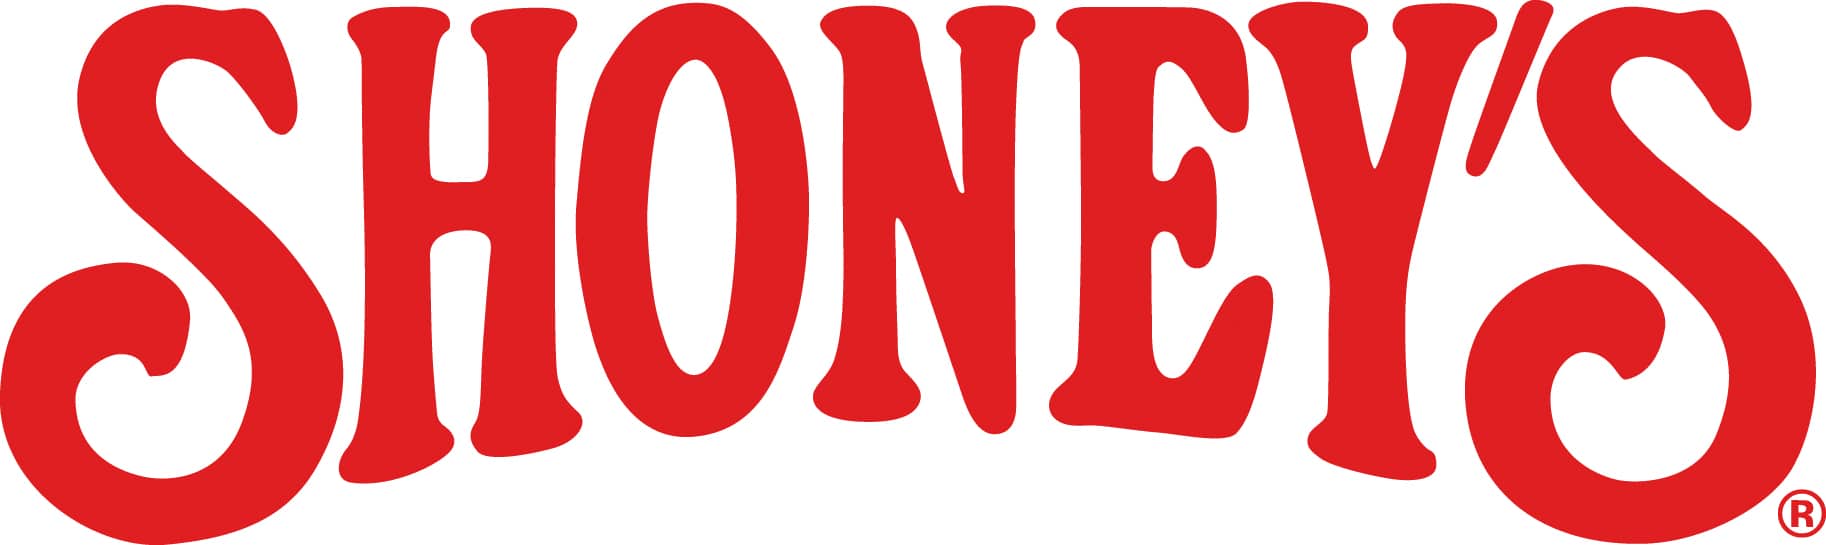 Shoneys logo